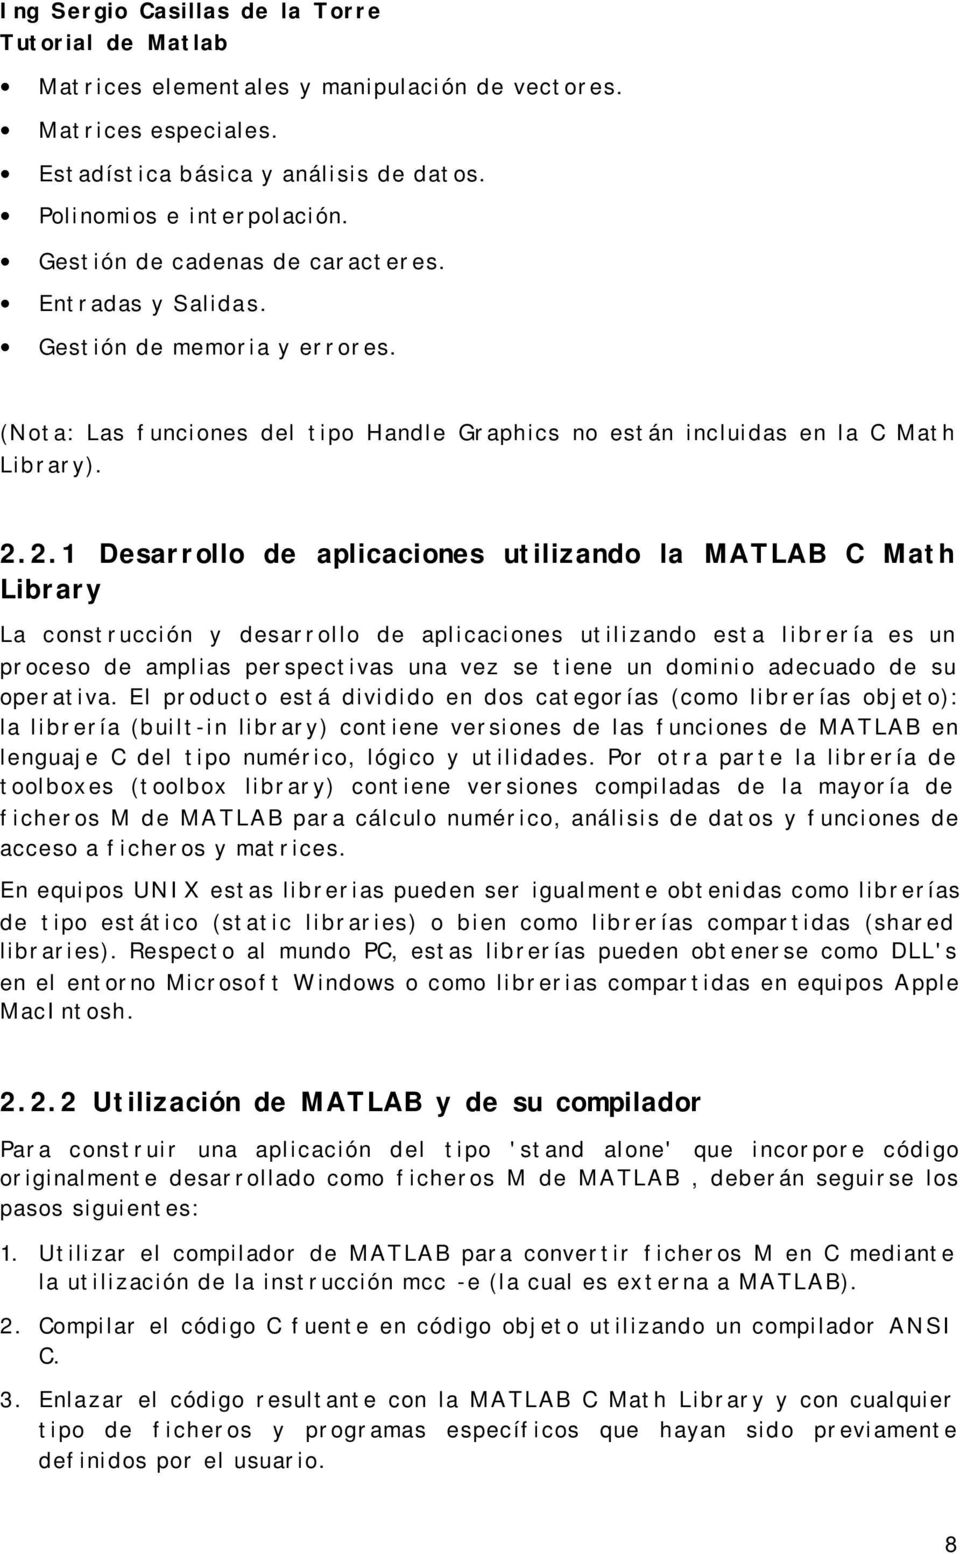 2.1 Desarrollo de aplicaciones utilizando la MATLAB C Math Library La construcción y desarrollo de aplicaciones utilizando esta librería es un proceso de amplias perspectivas una vez se tiene un